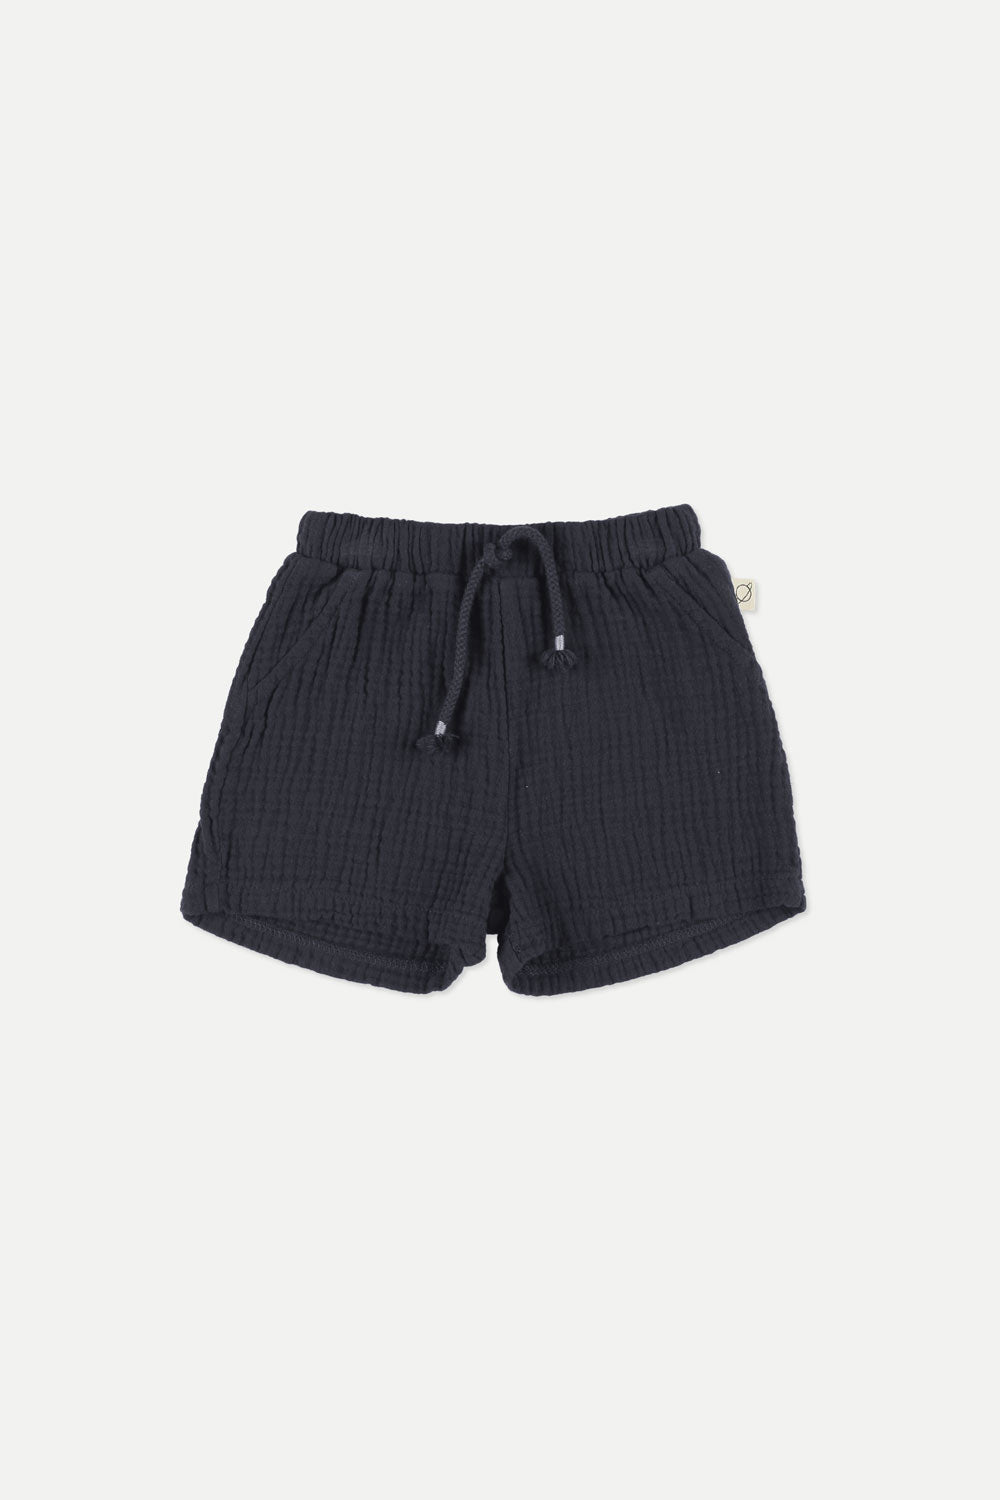 Shorts Baby Boy Adri Navy - ملابس